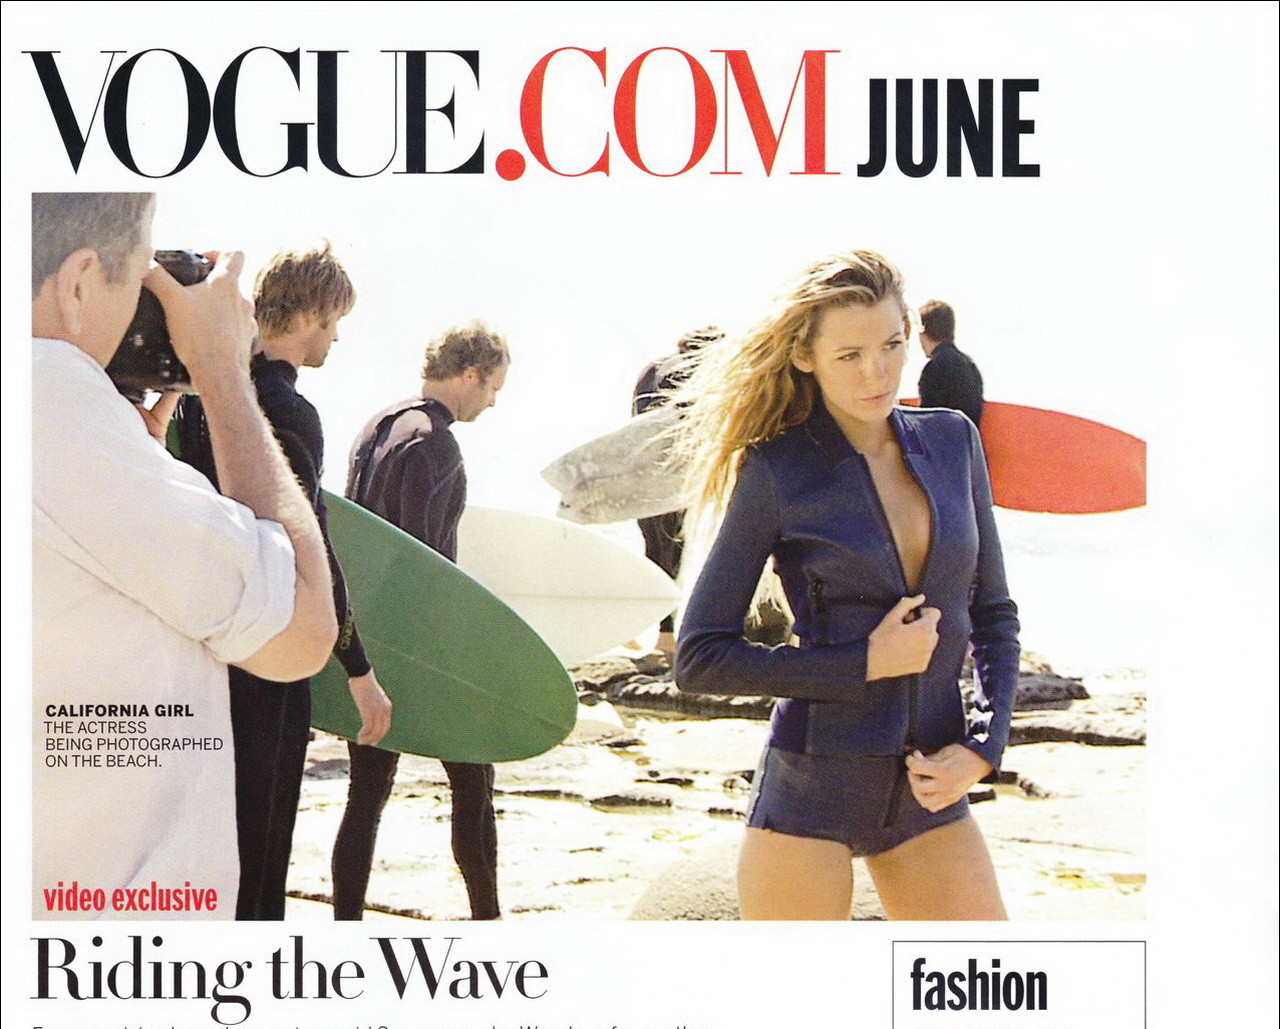 Blake lively dans un photoshoot sexy sur la plage pour le numéro de juin de Vogue US.
 #75348191